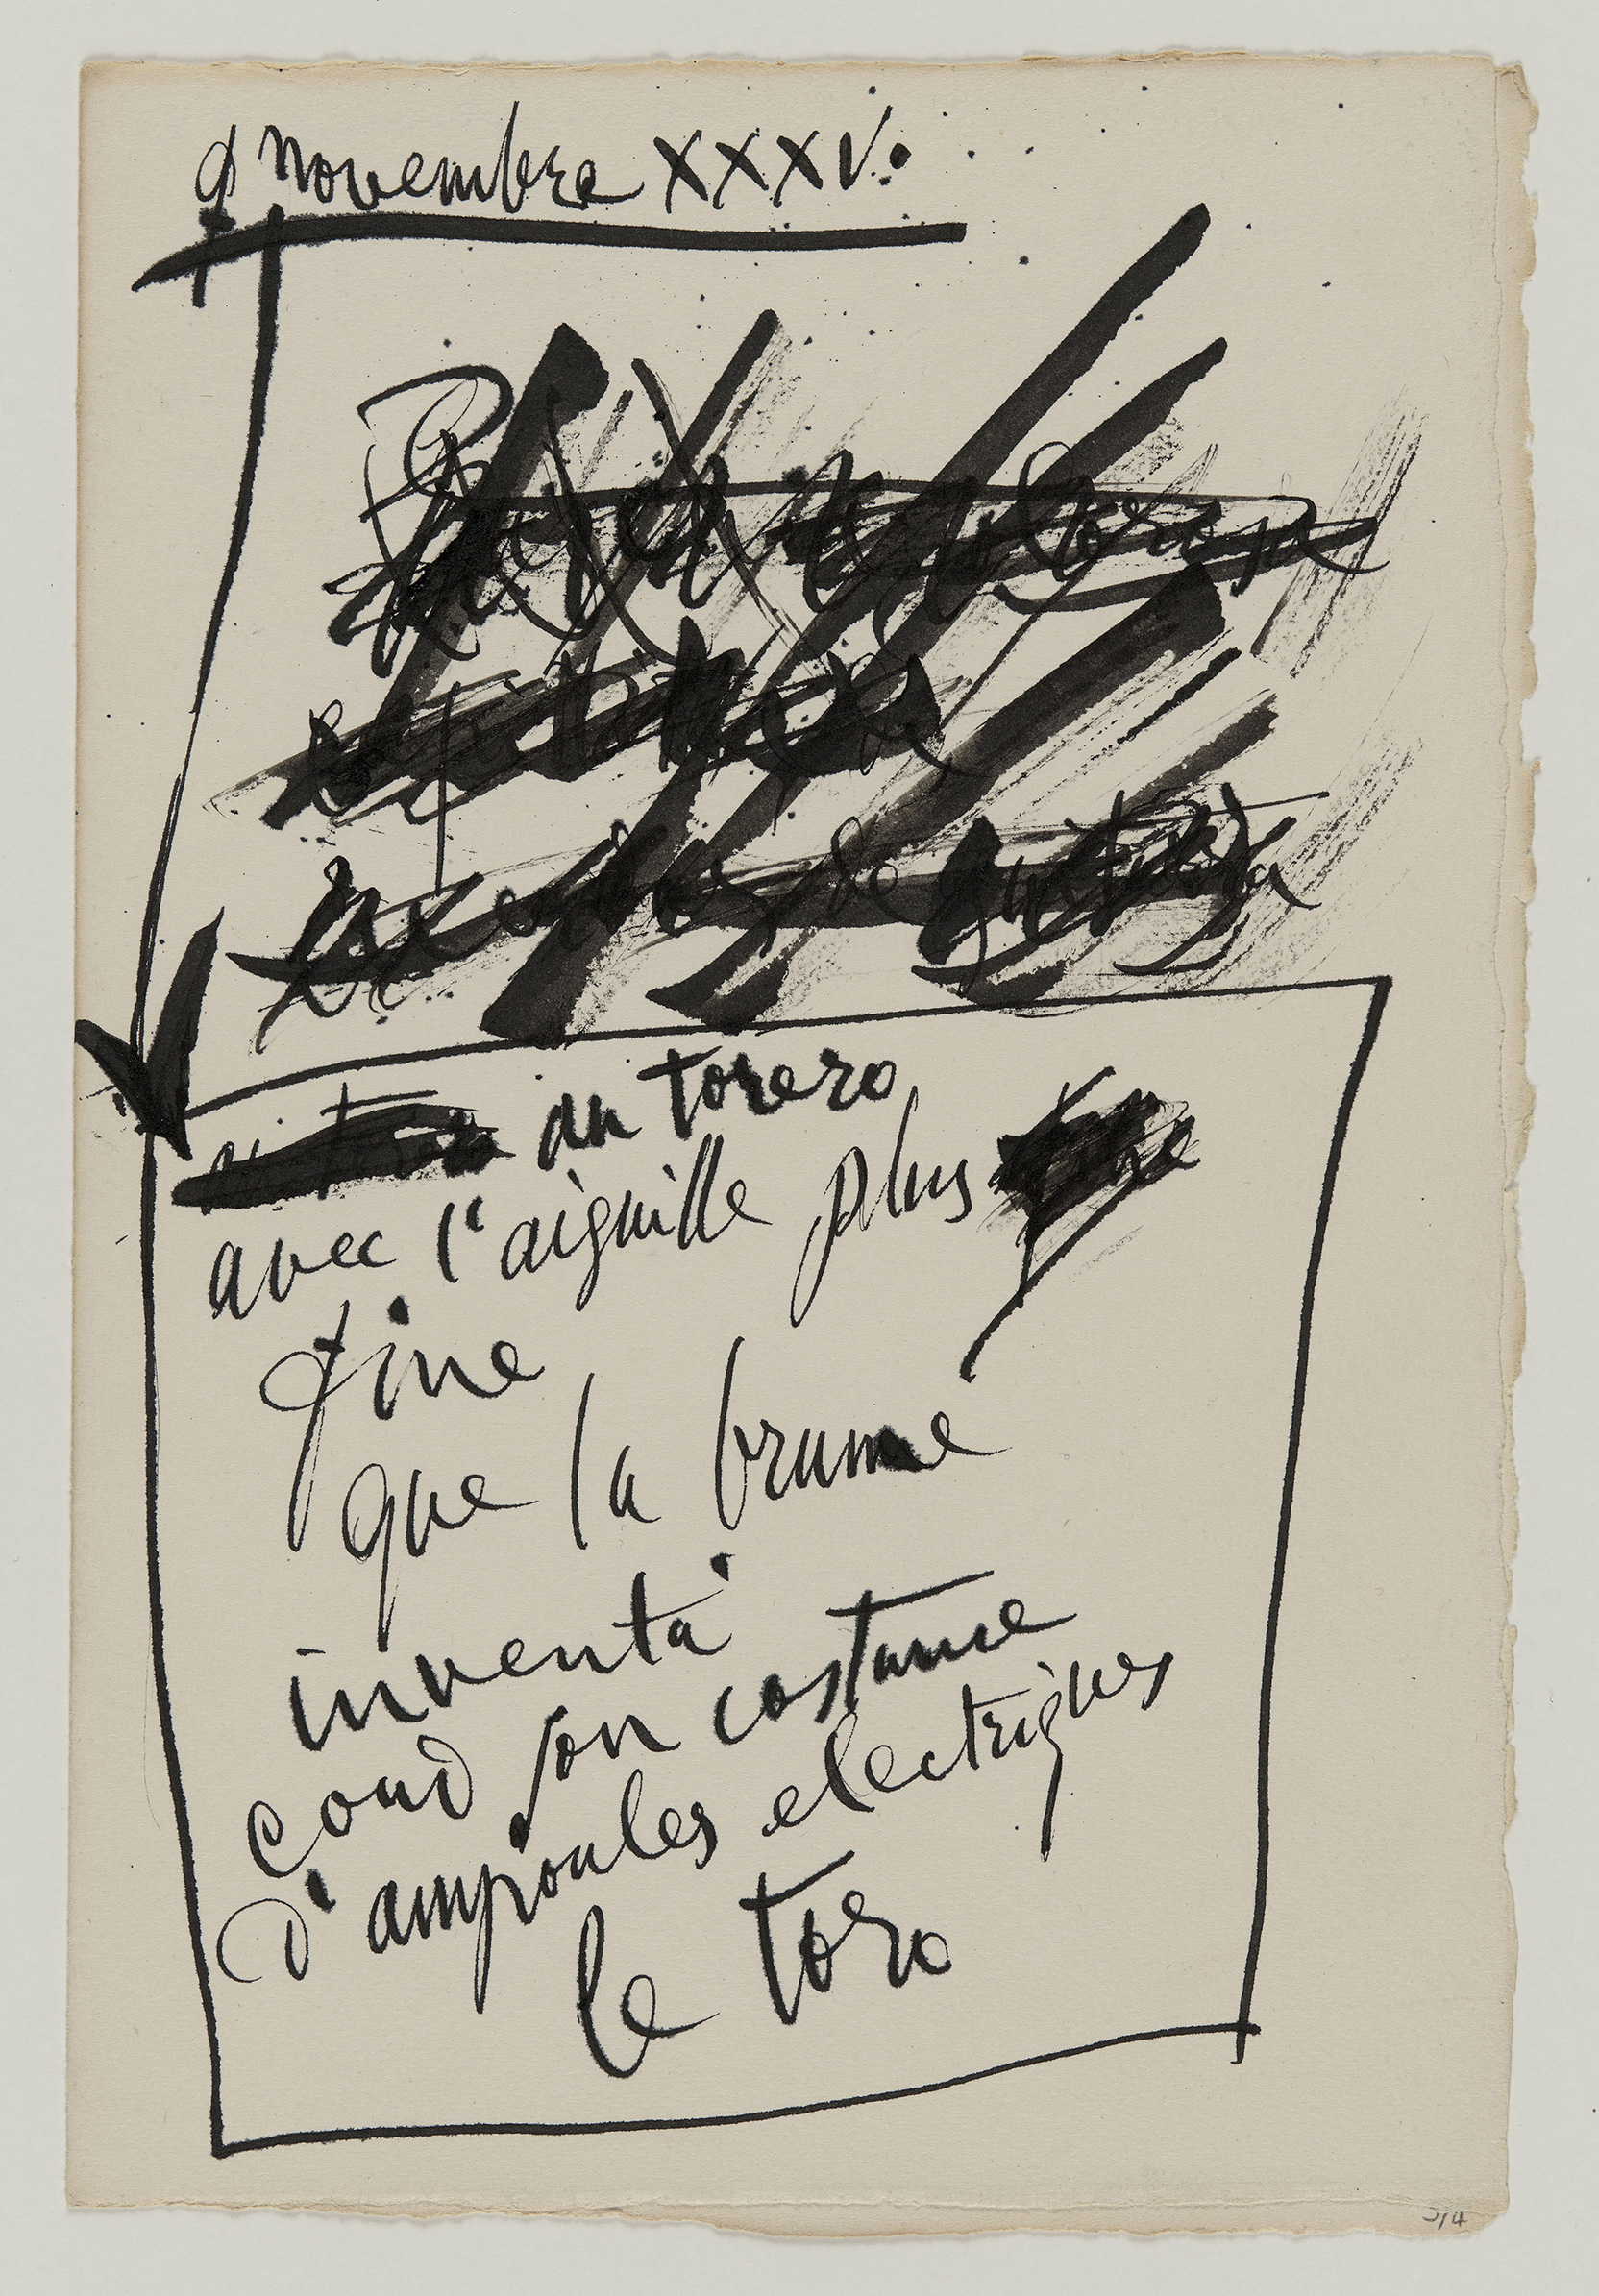 Picasso - "Au torero / avec l’aiguille plus /fine / que la brume(...)" / "Sobre la messa(...)" - MP3663-69 -19-538819